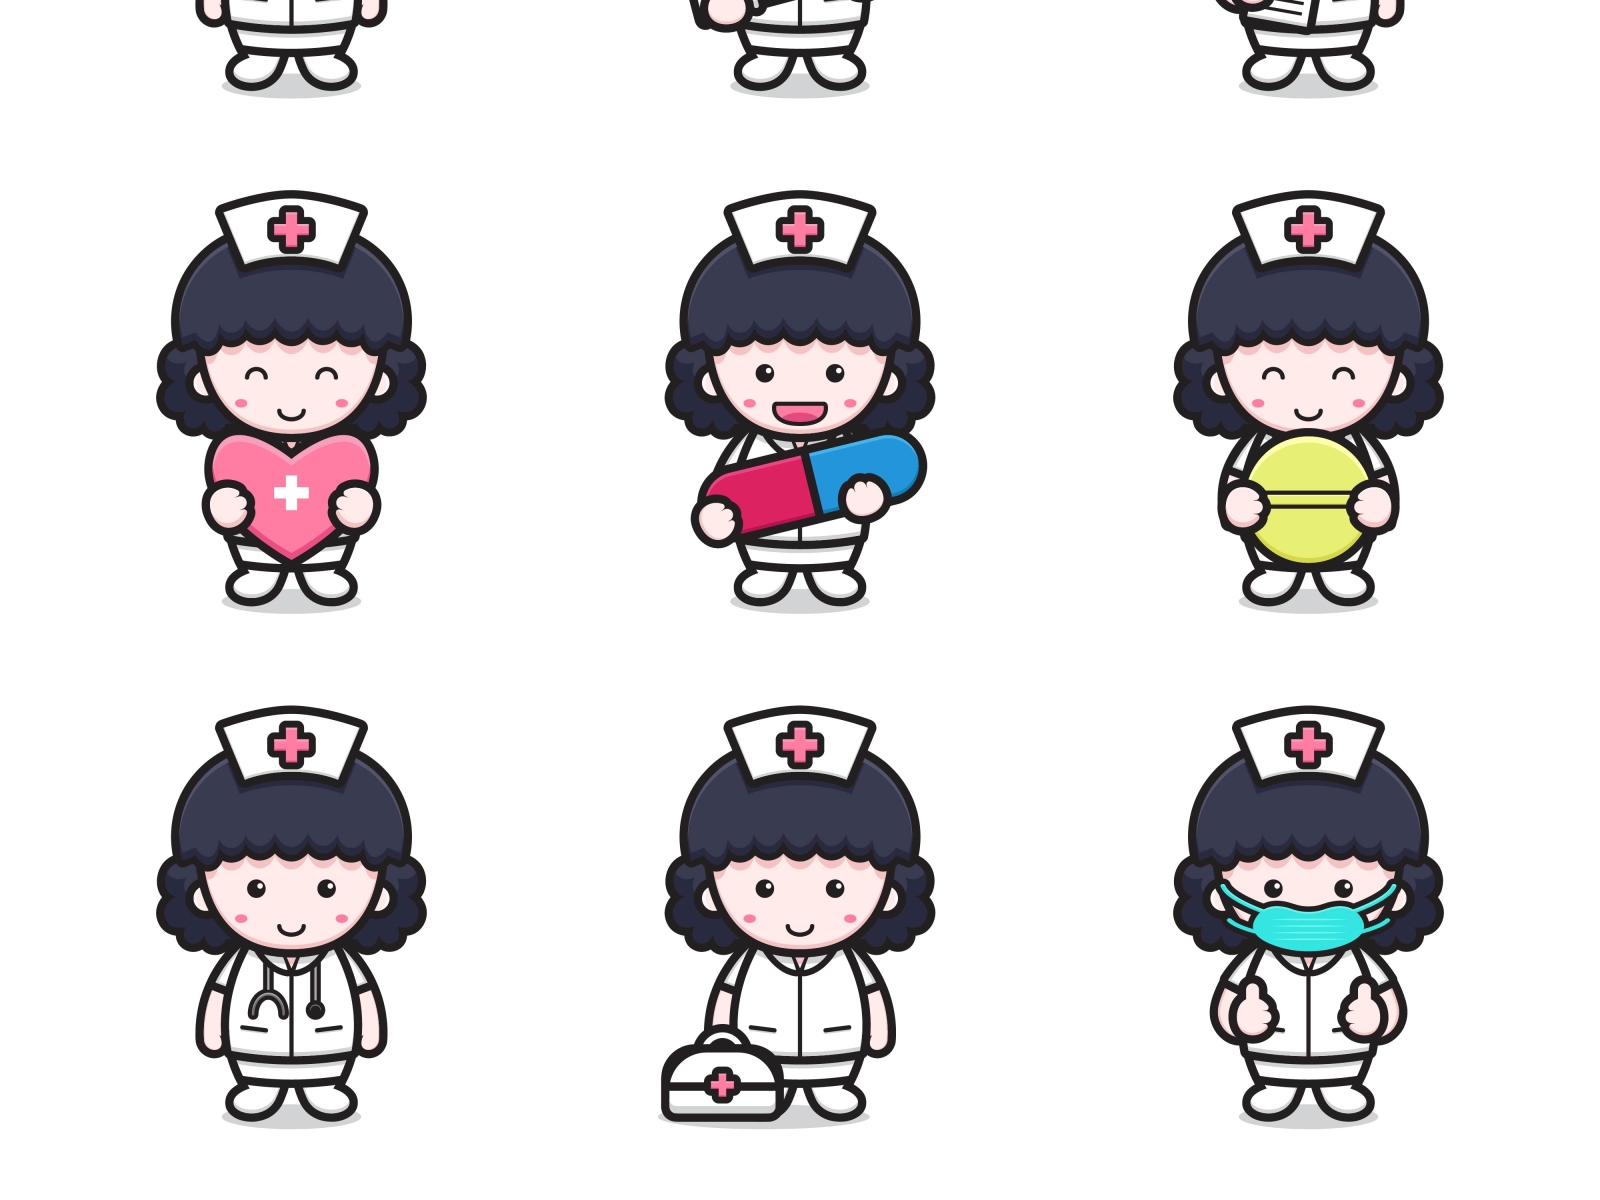 cartoon cute nurse